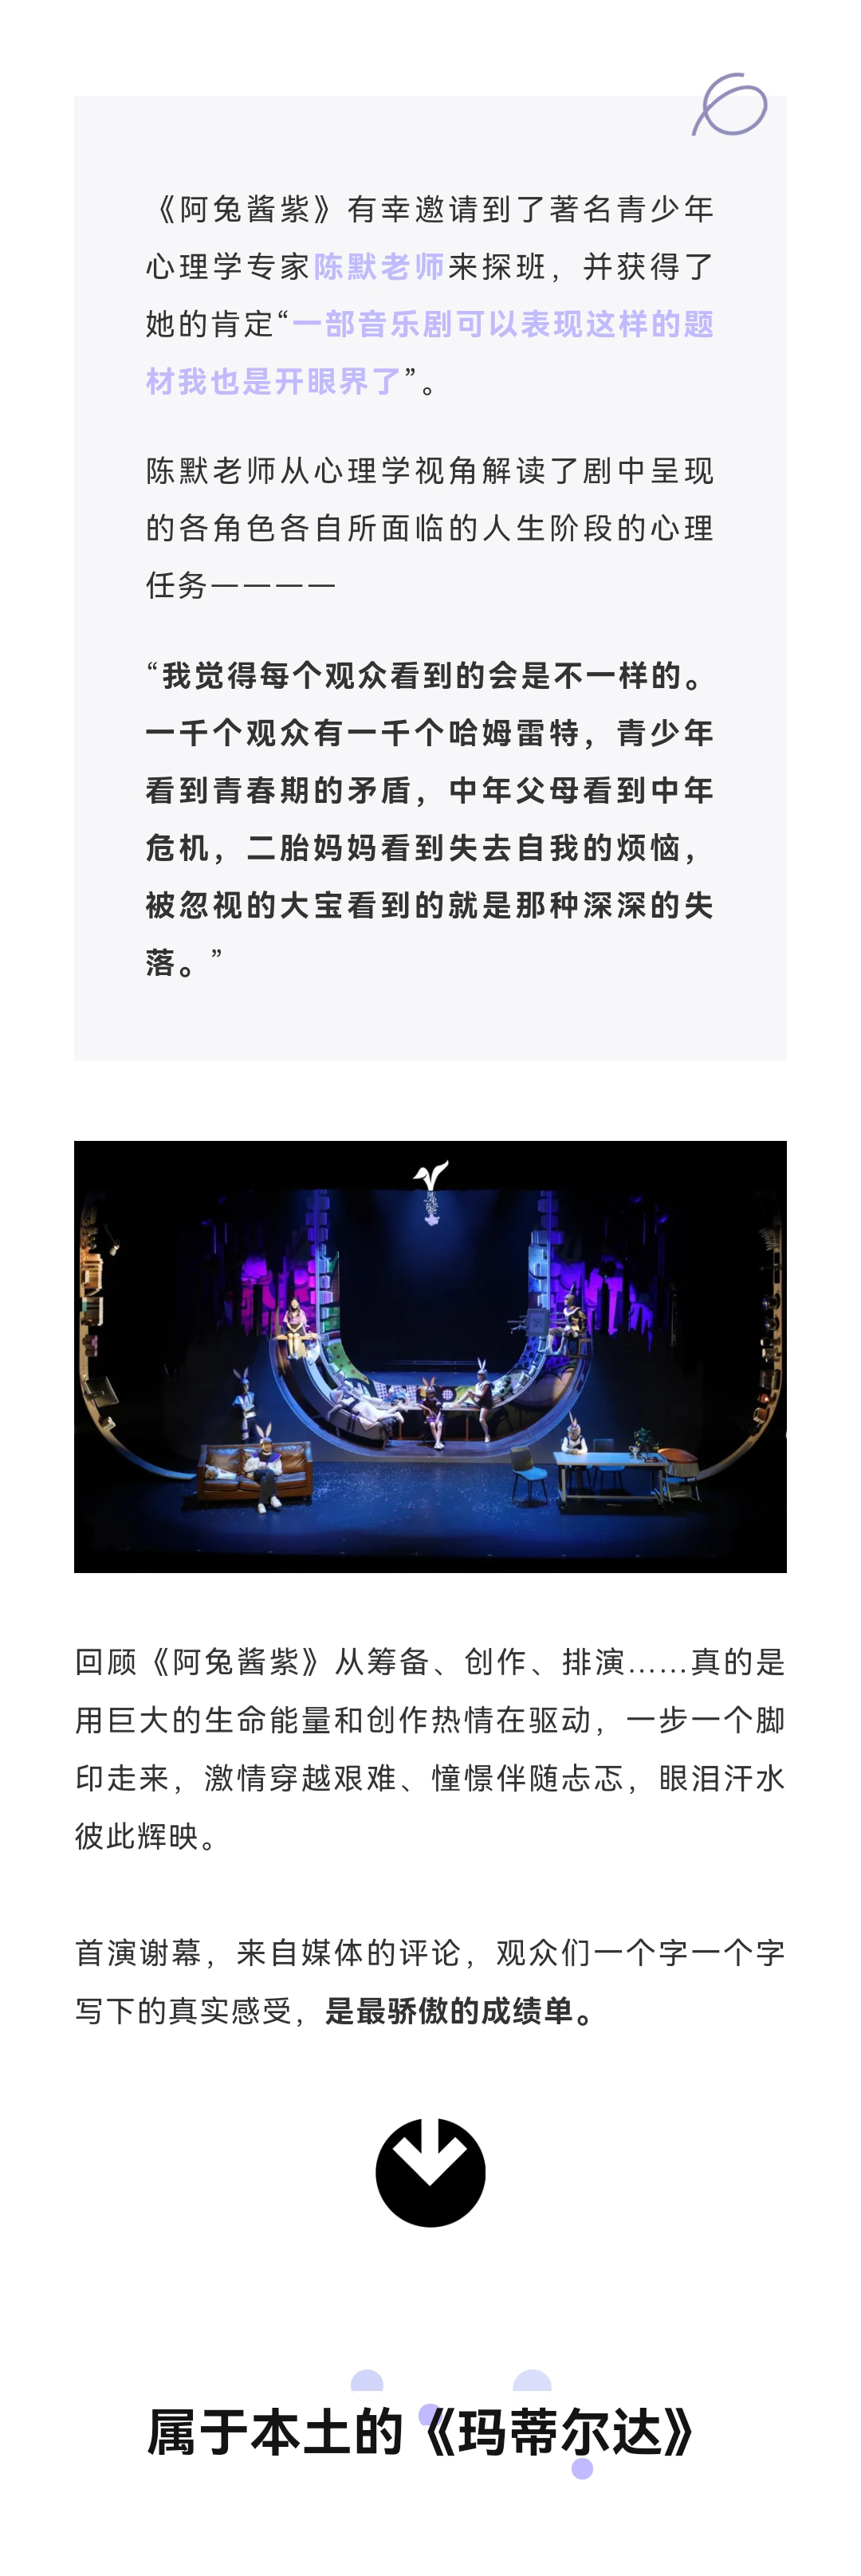 2022尔多原创音乐剧《阿兔酱紫》-上海站